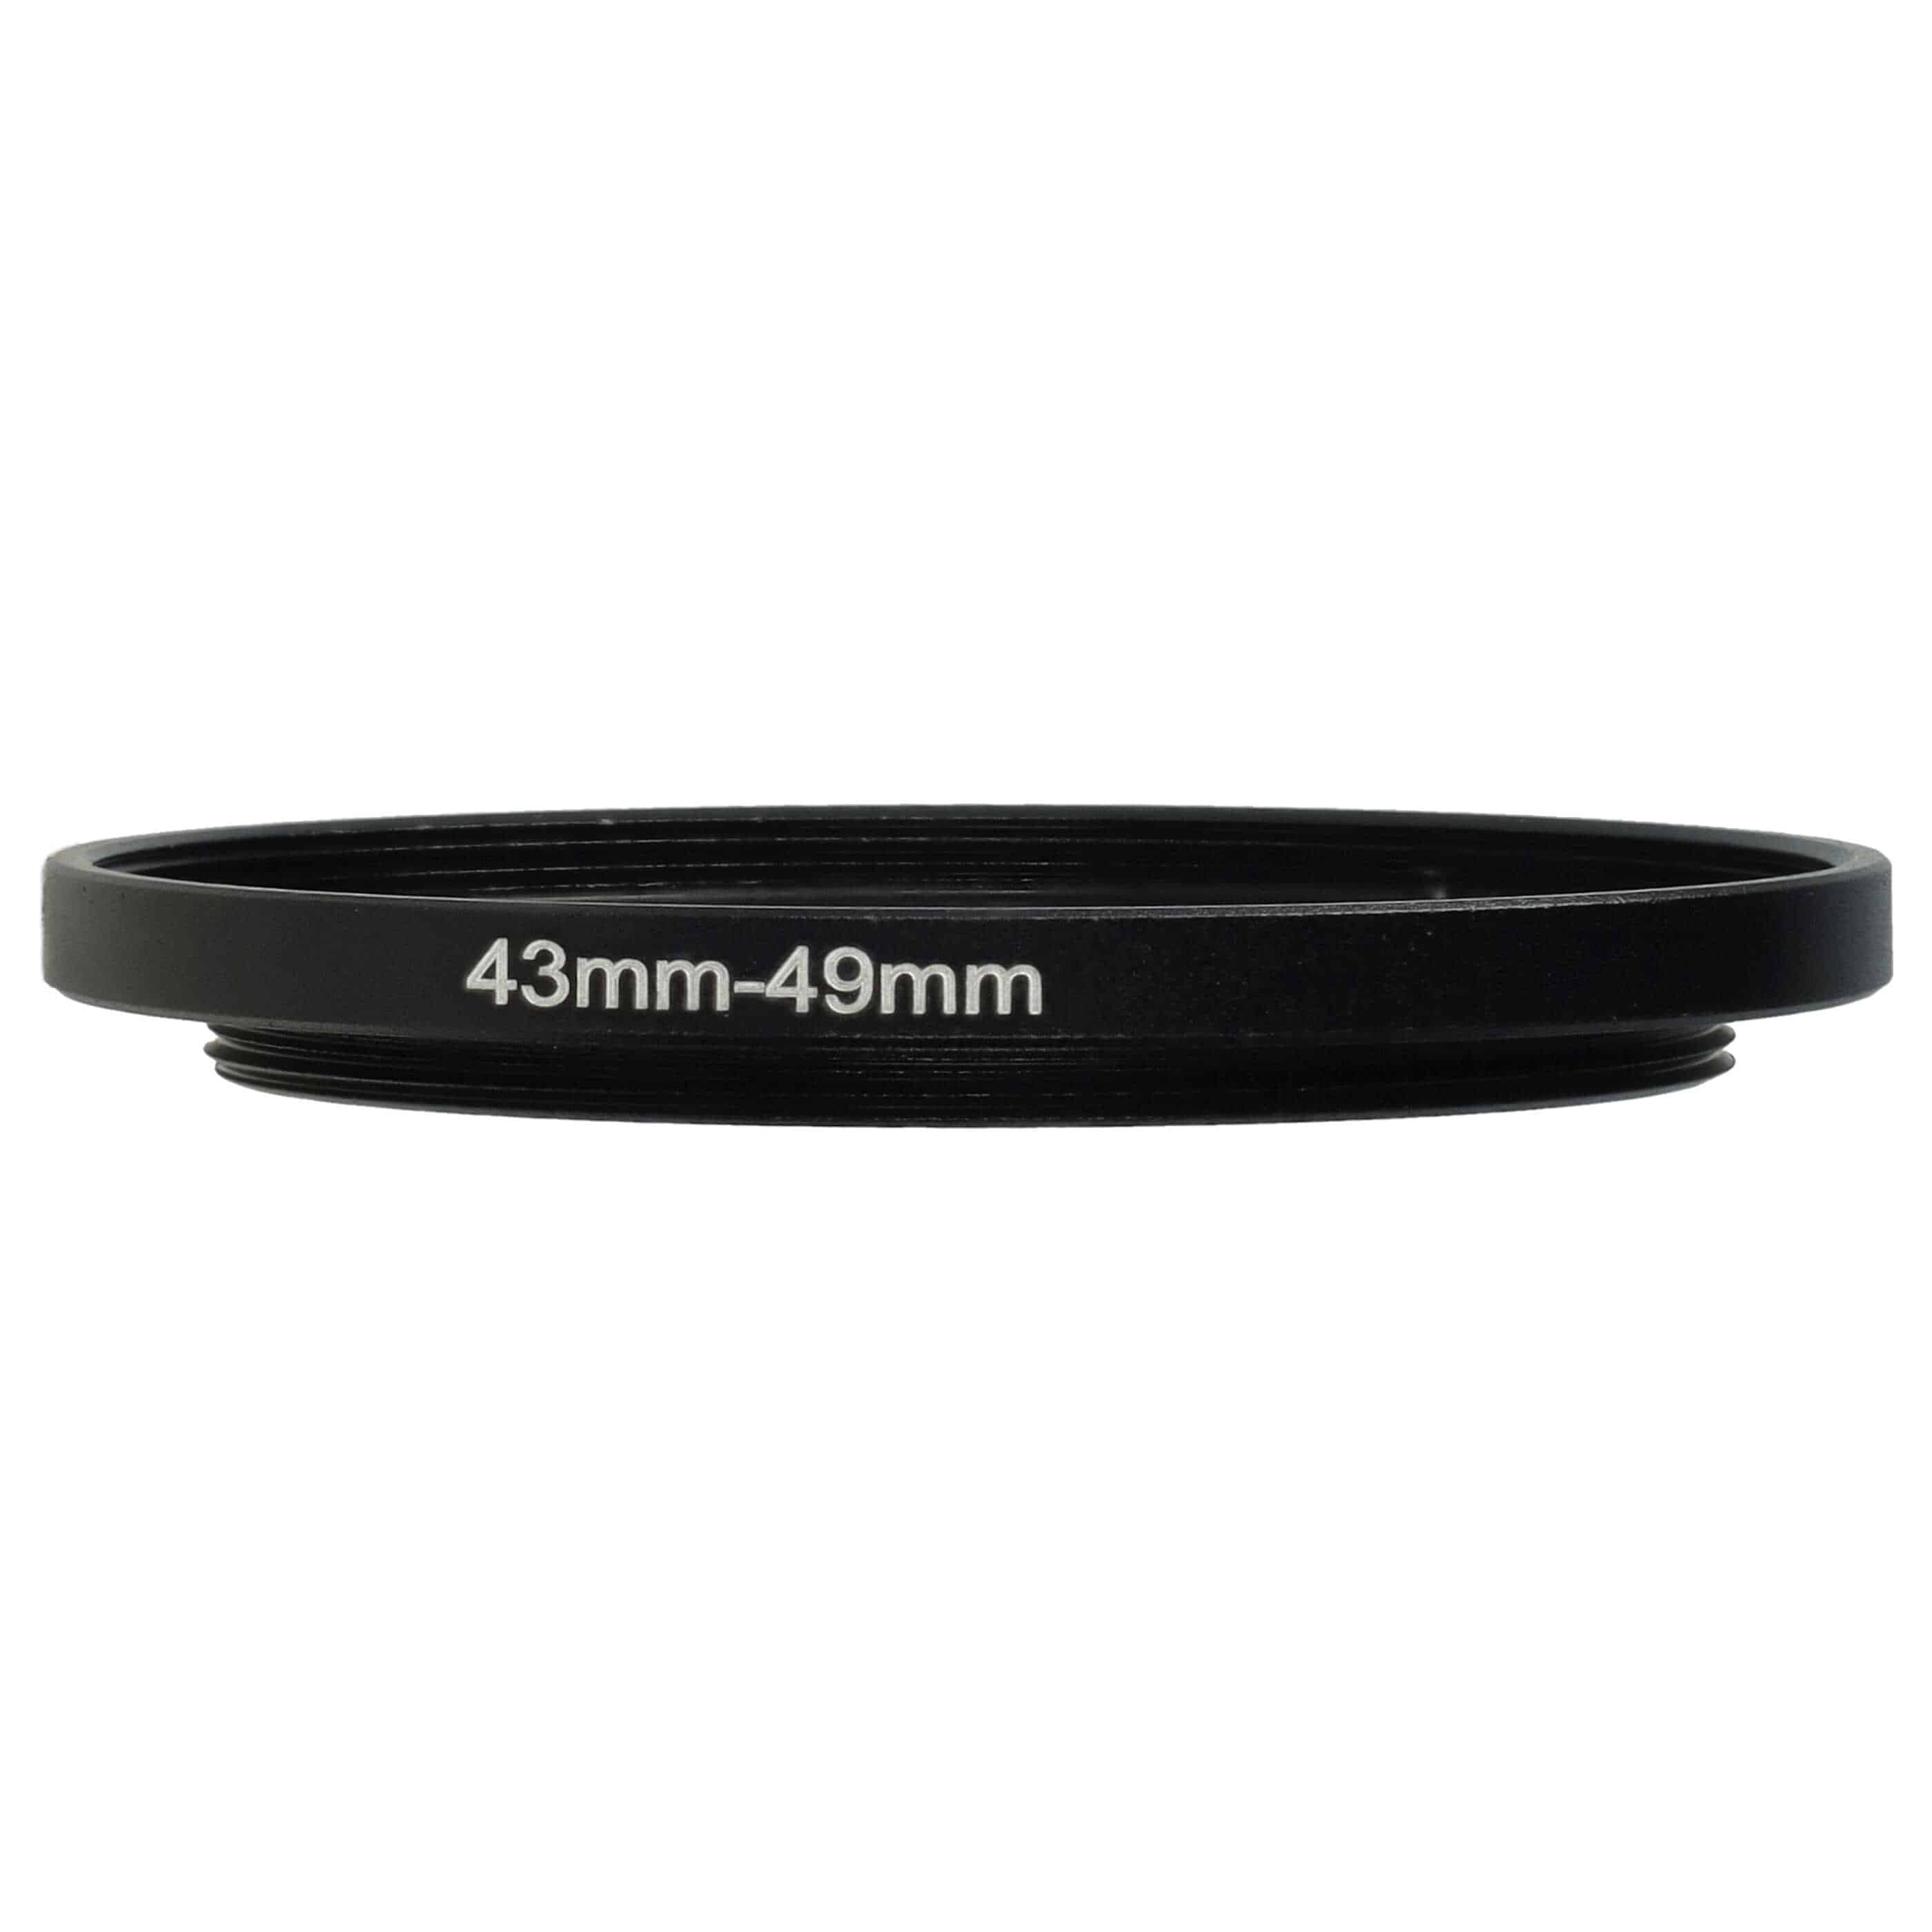 Redukcja filtrowa adapter 43 mm na 49 mm na różne obiektywy 